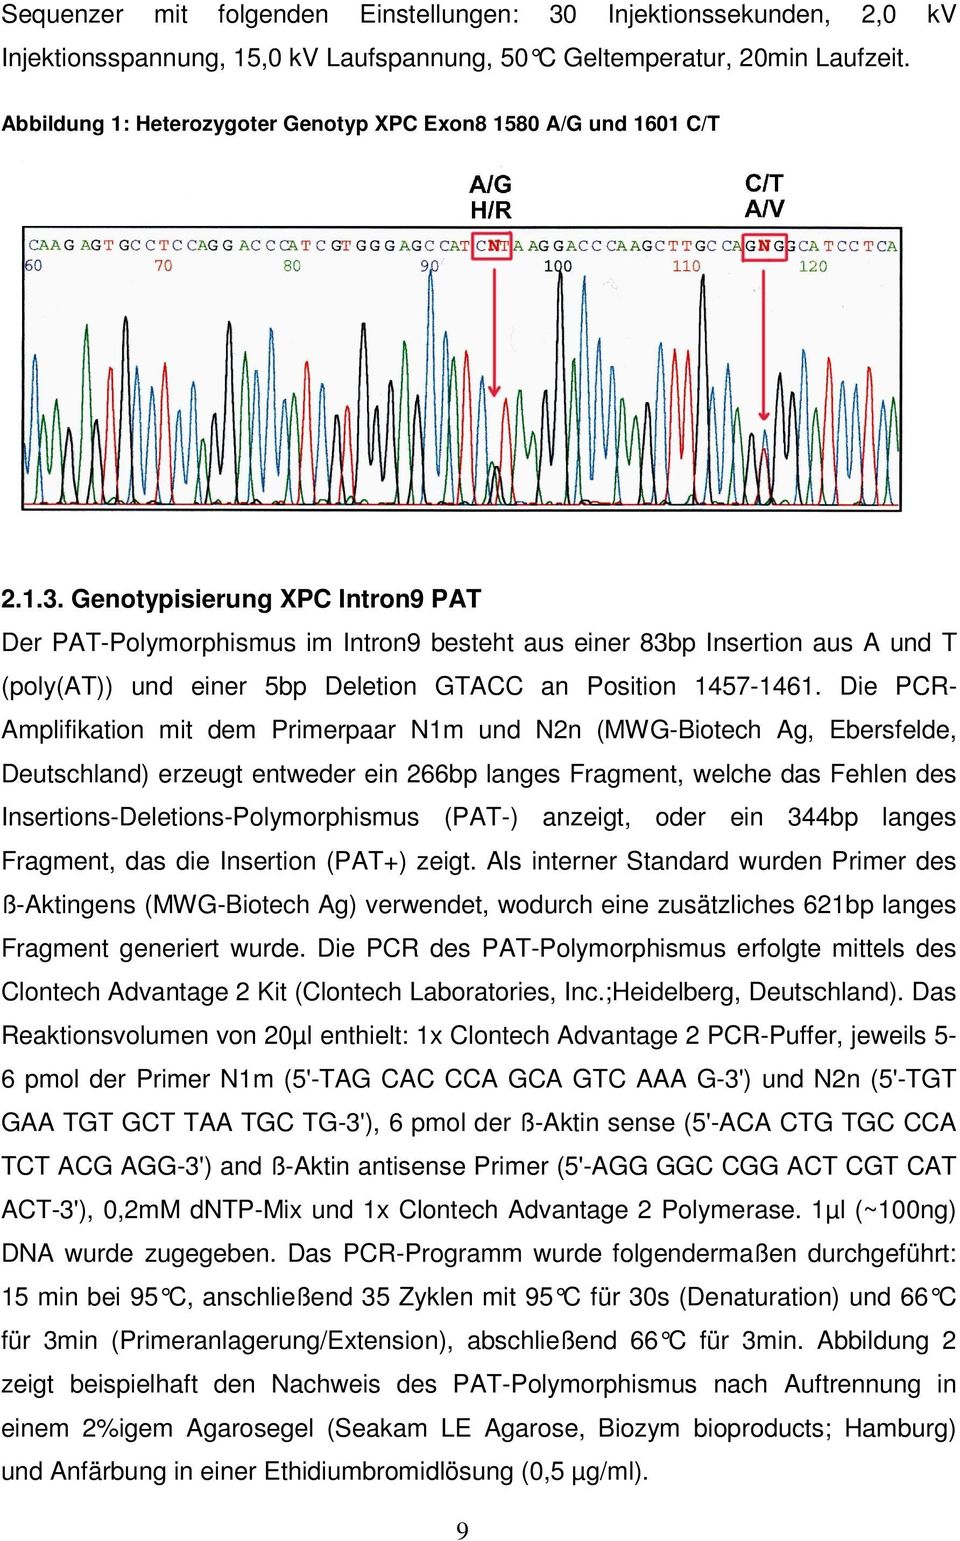 Genotypisierung XPC Intron9 PAT Der PAT-Polymorphismus im Intron9 besteht aus einer 83bp Insertion aus A und T (poly(at)) und einer 5bp Deletion GTACC an Position 1457-1461.